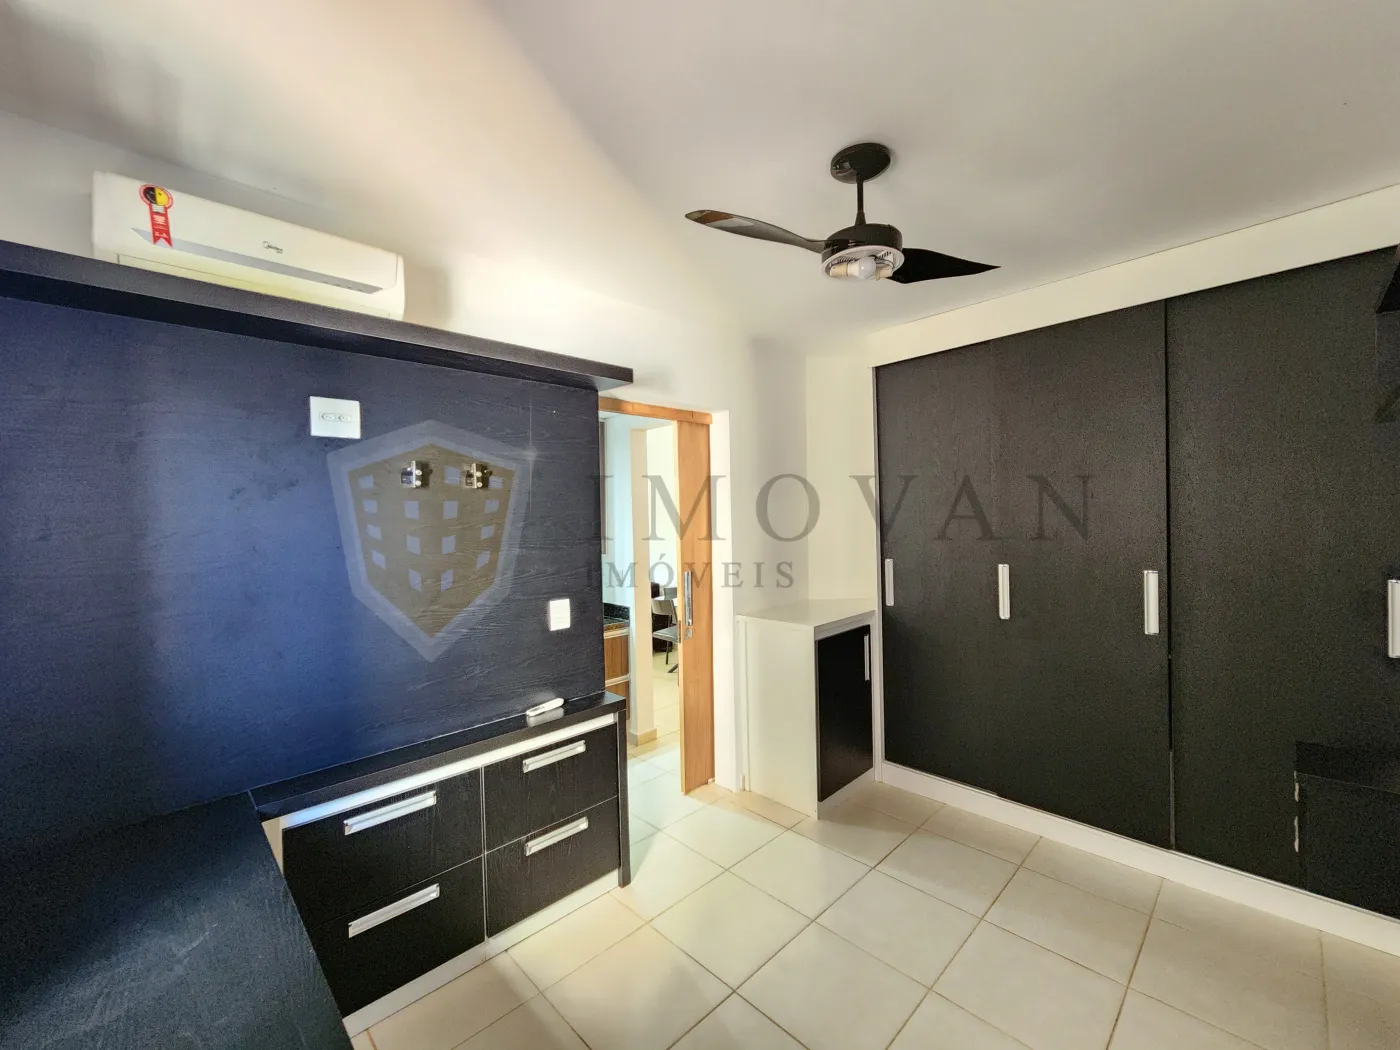 Alugar Apartamento / Padrão em Ribeirão Preto R$ 1.900,00 - Foto 10